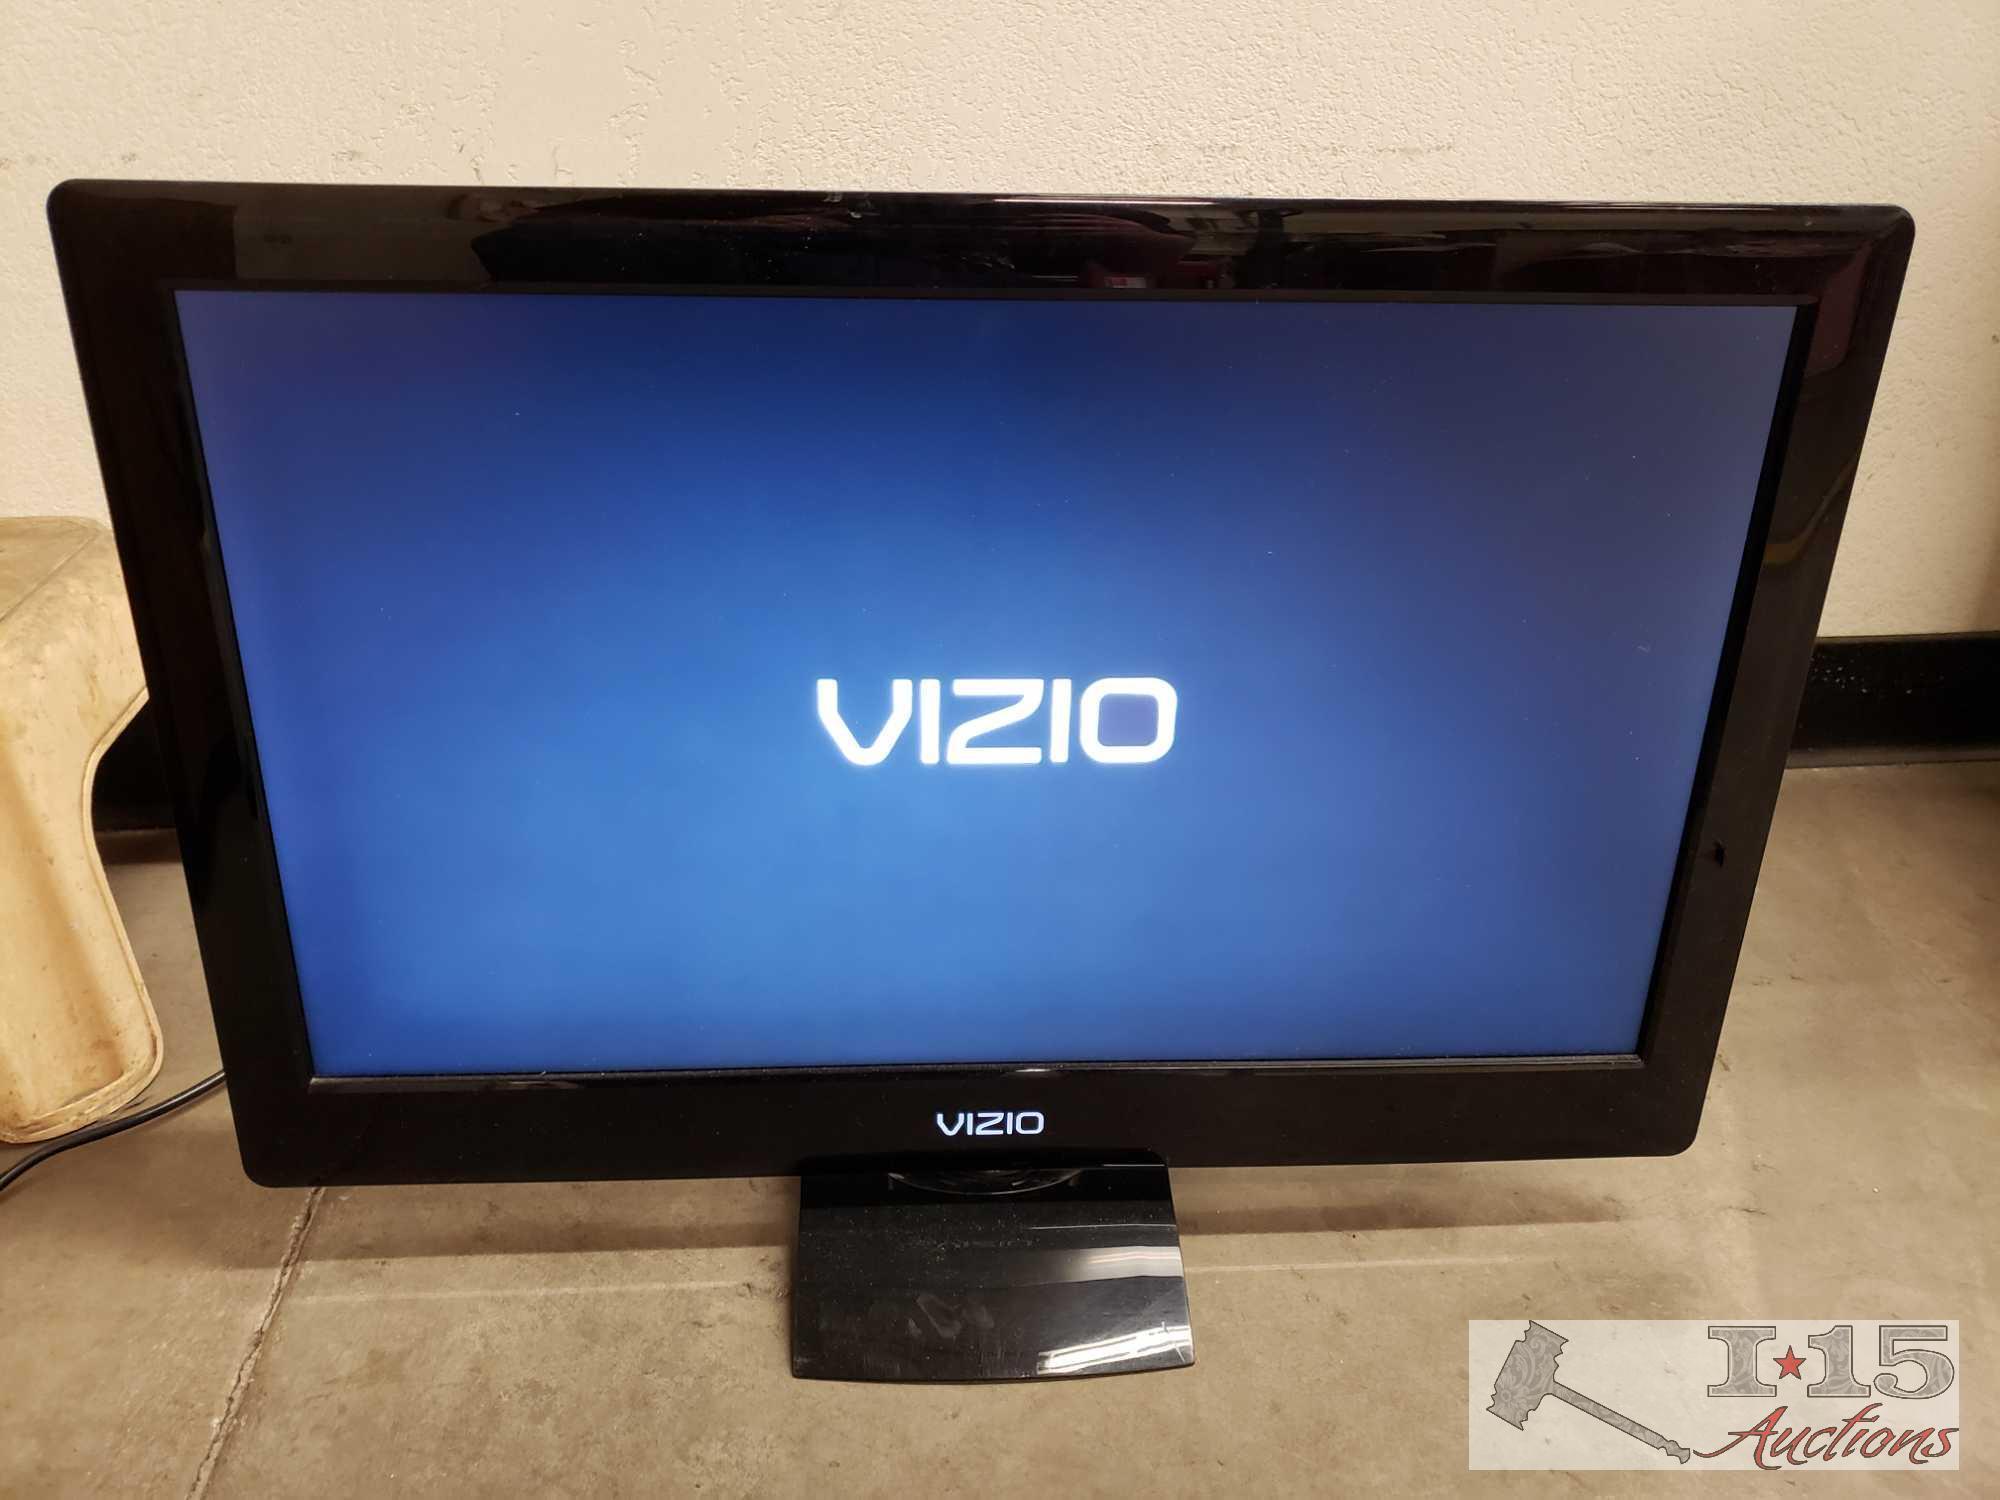 26" Vizio TV with Remote